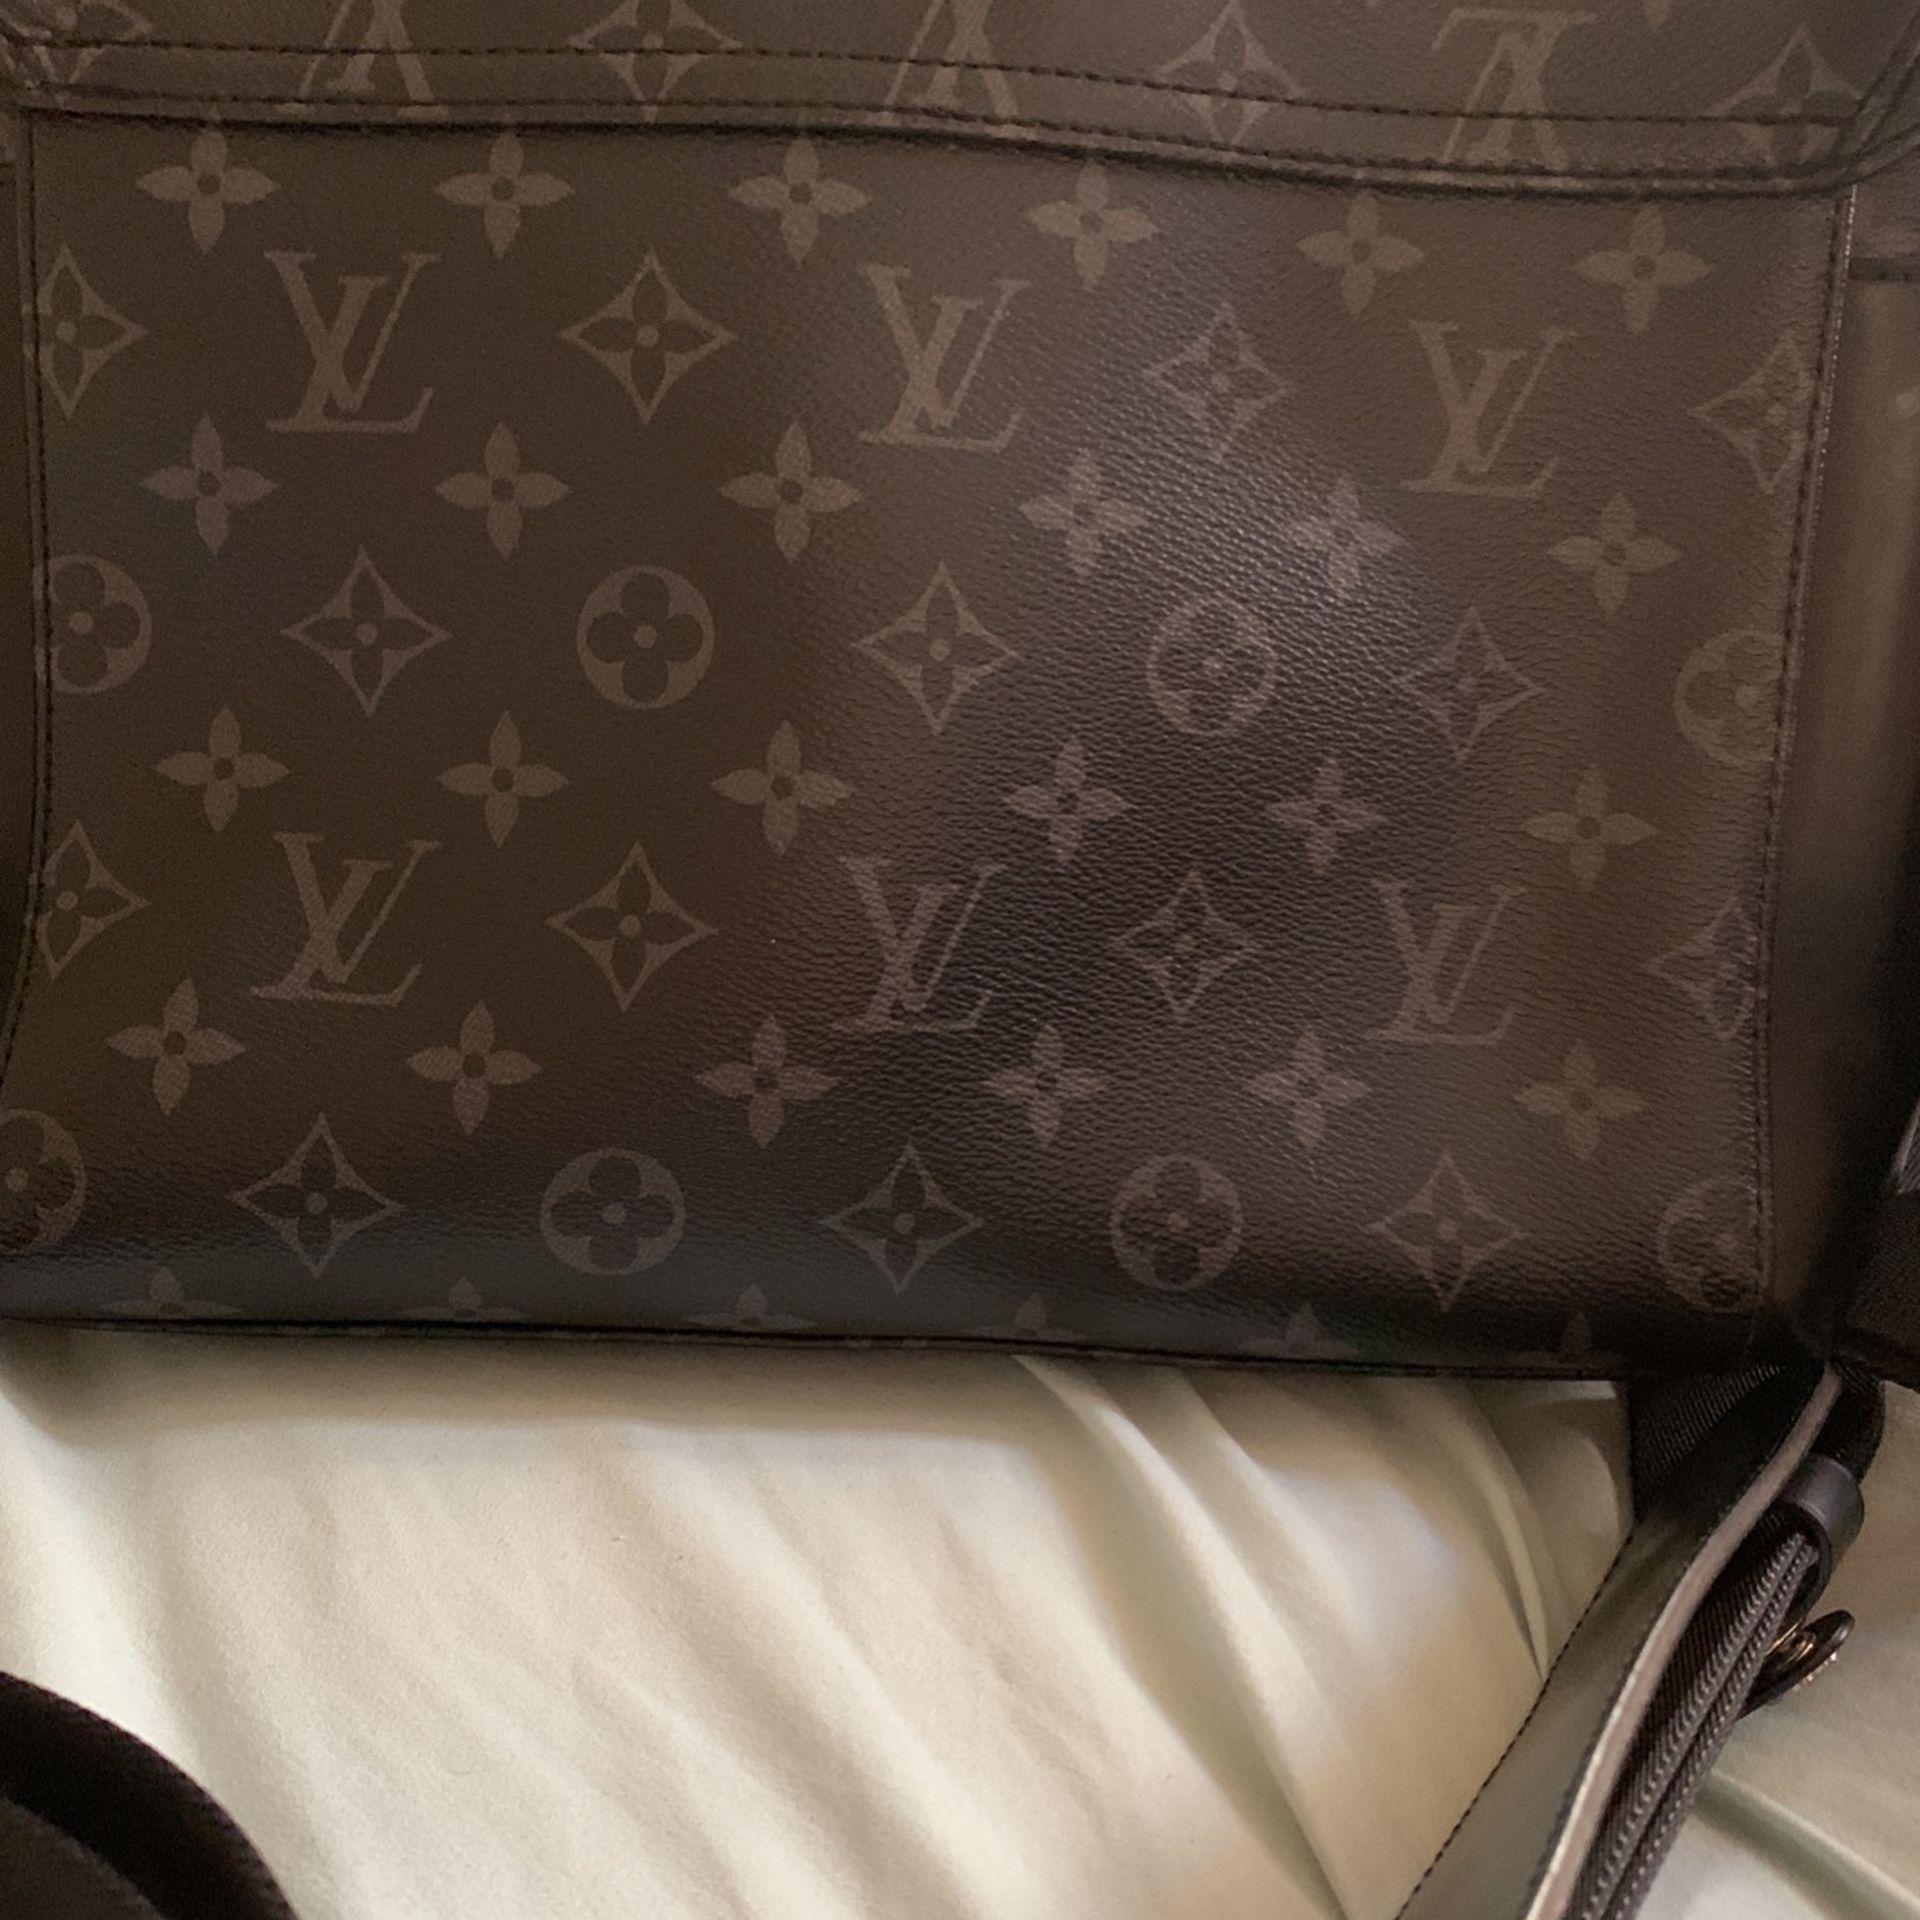 Men's Louis Vuitton Messenger Bag… Original for Sale in Huntington